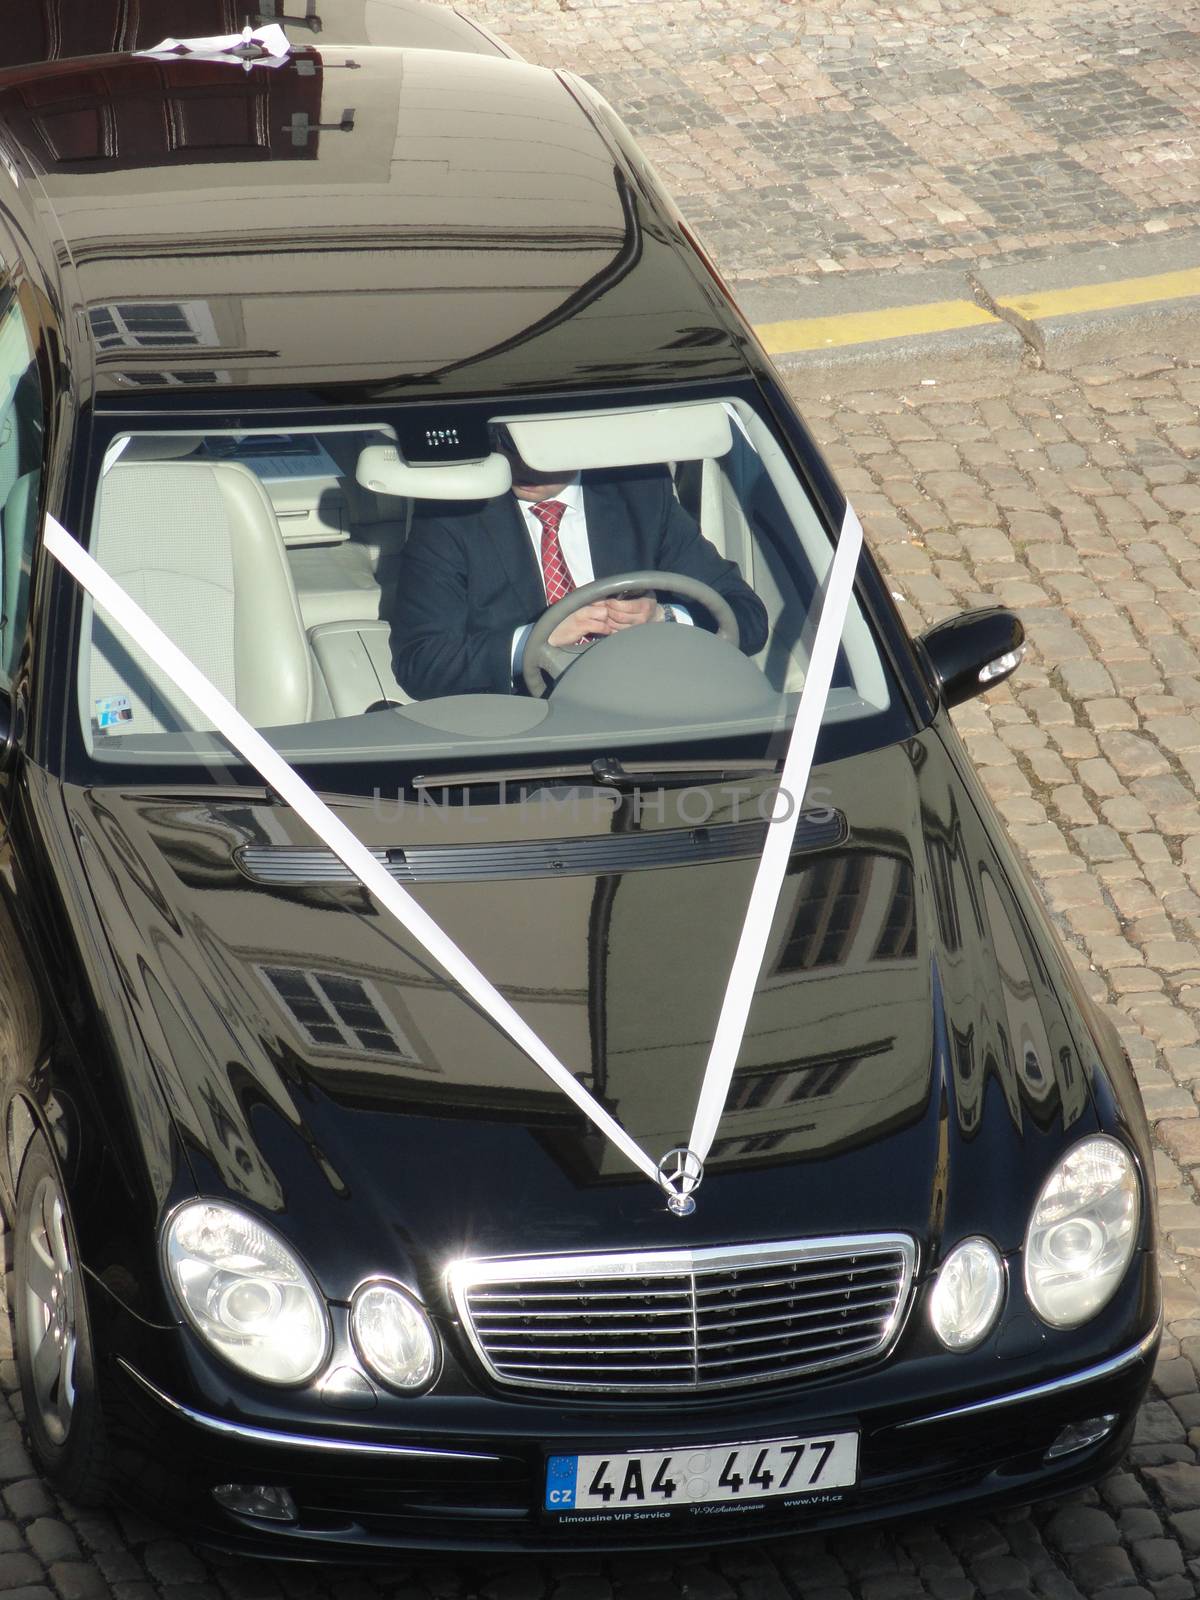 Mercedes Wedding Car by bensib